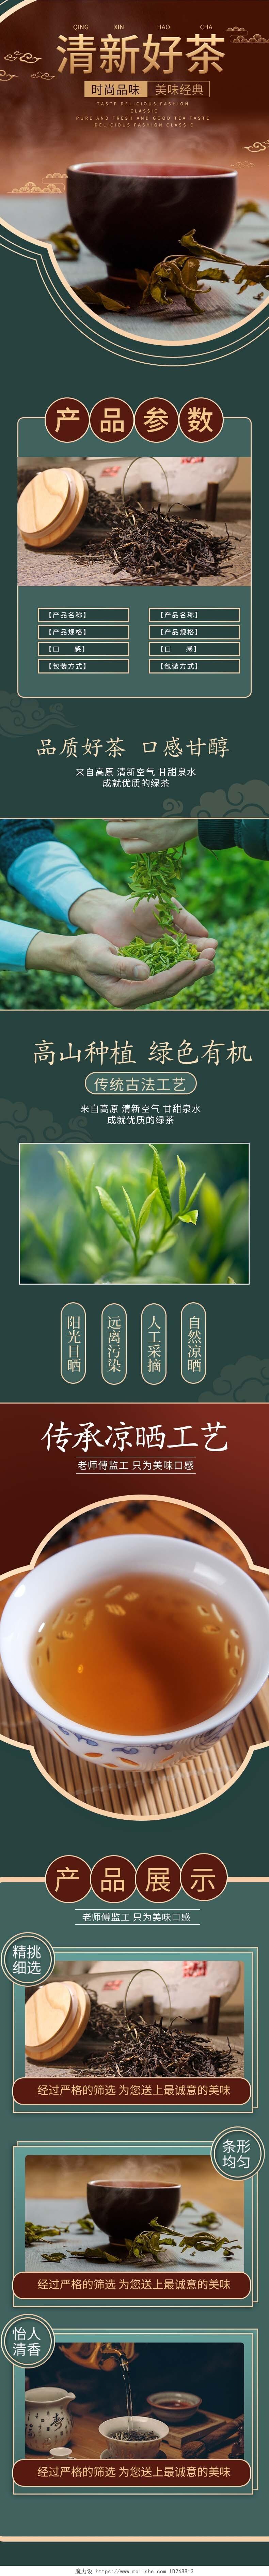 绿色复古中国风清新好茶茶叶详情页